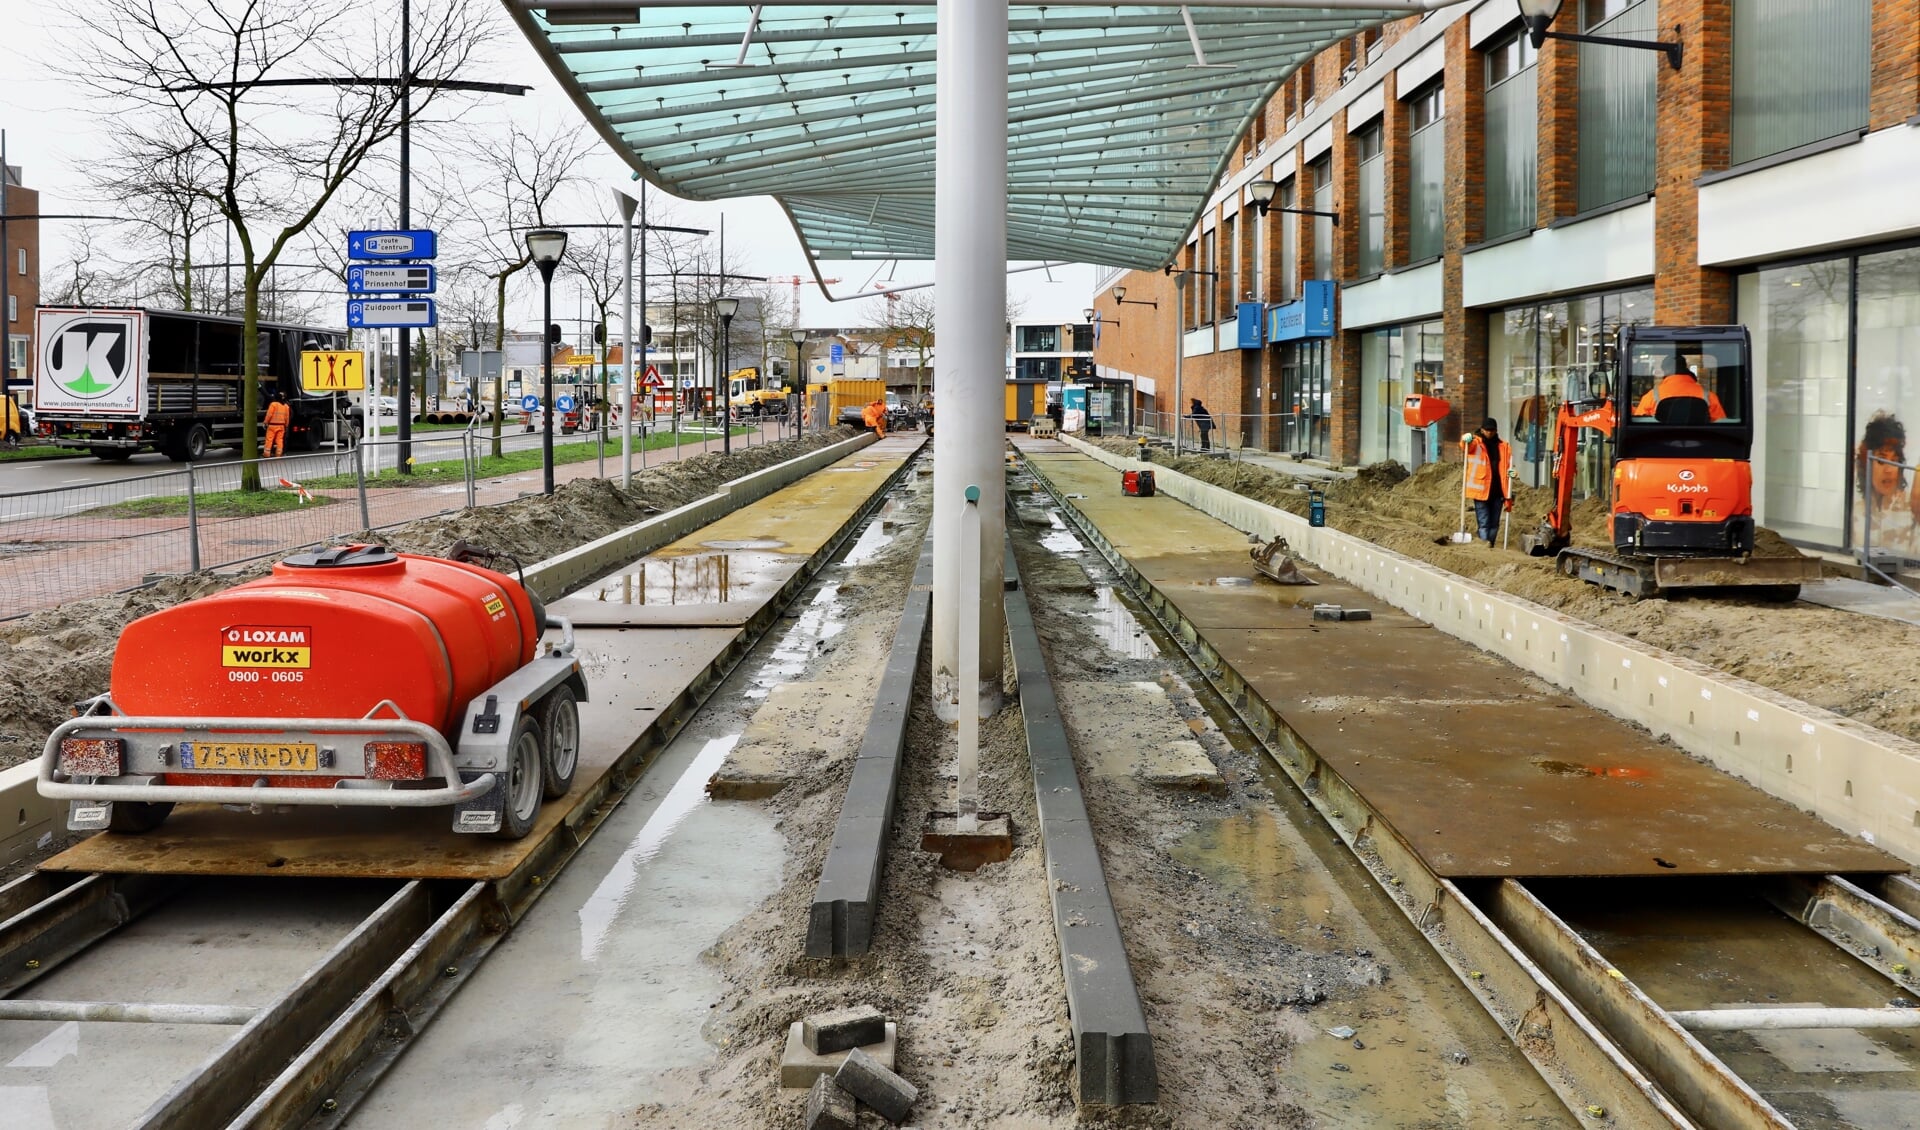 De recente werkzaamheden aan de ongebruikte trambaan leiden tot onbegrip (Foto: Koos Bommelé)